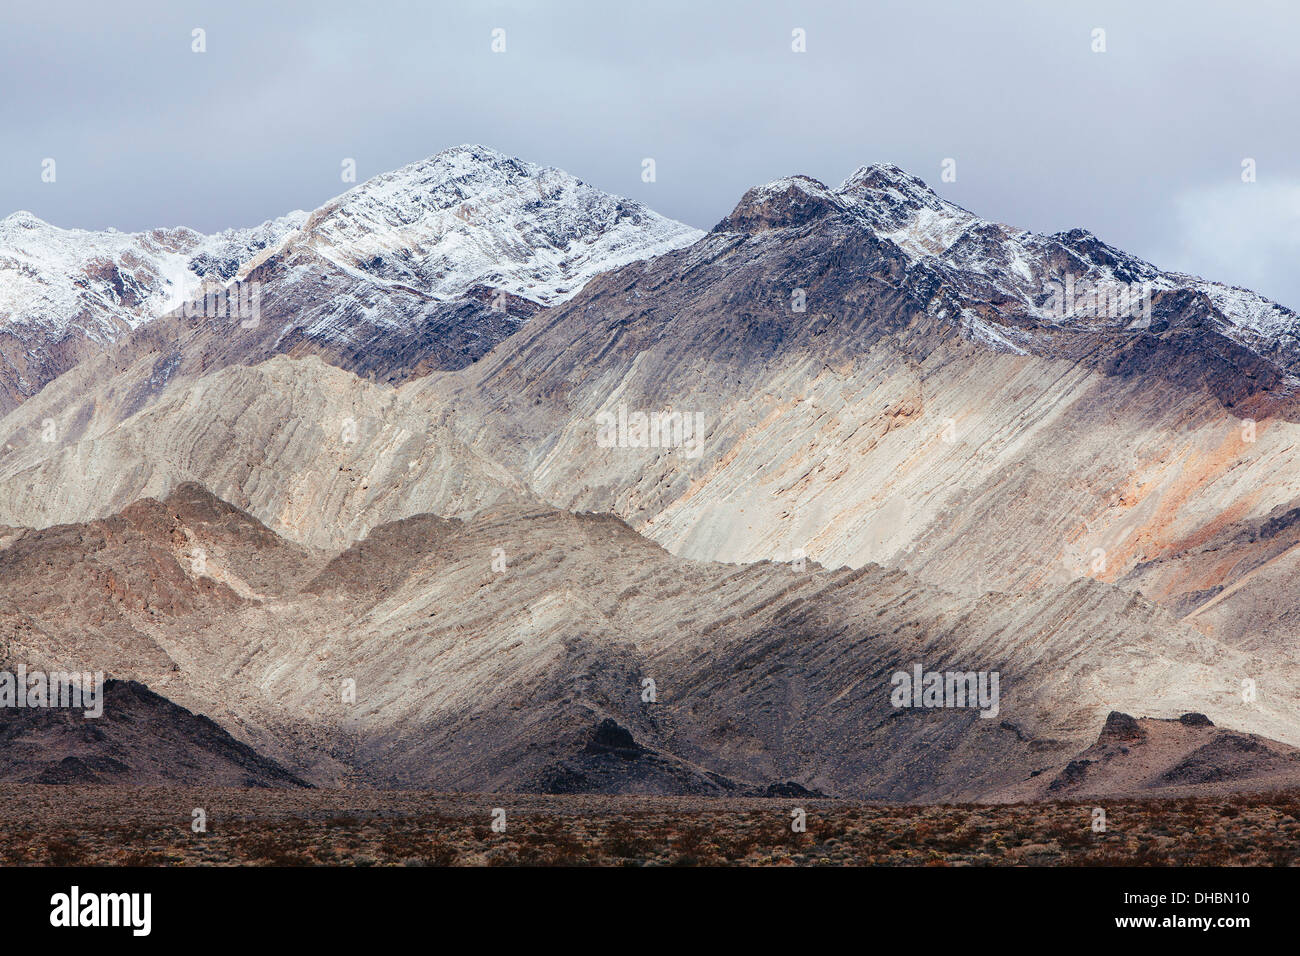 Montagnes couvertes de neige et ciel menaçant, Panamint Mountains, Death Valley NP Banque D'Images